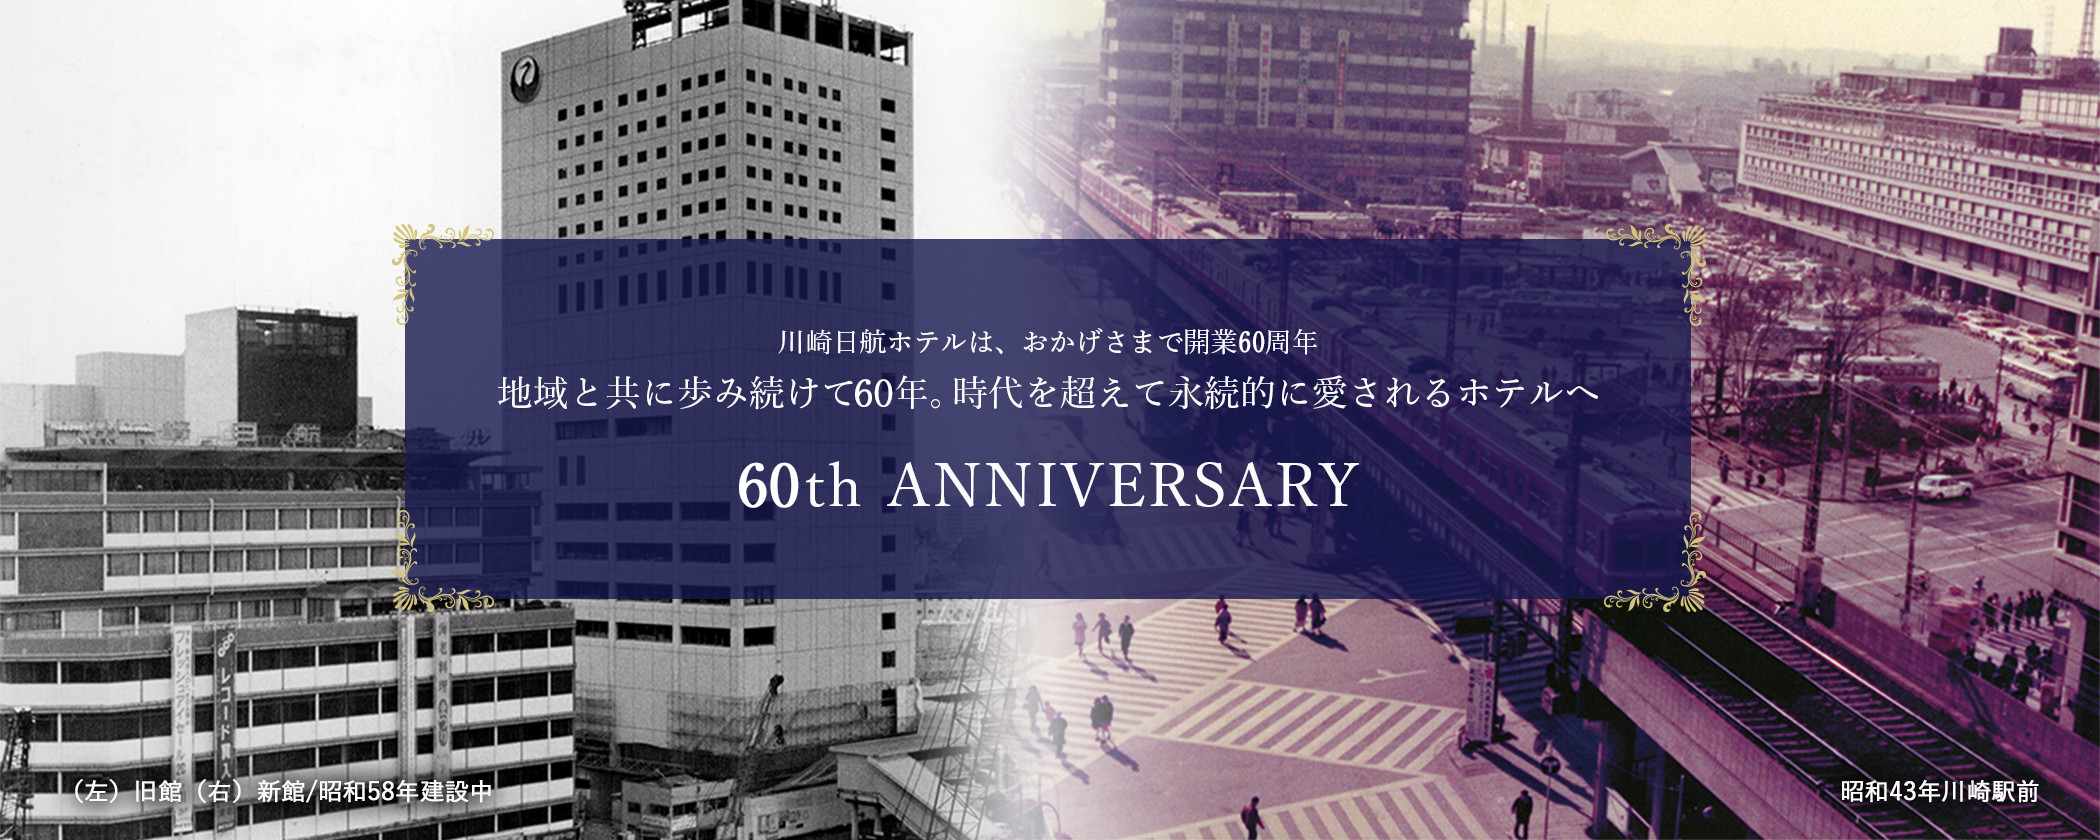 川崎日航ホテルは、おかげさまで開業60周年